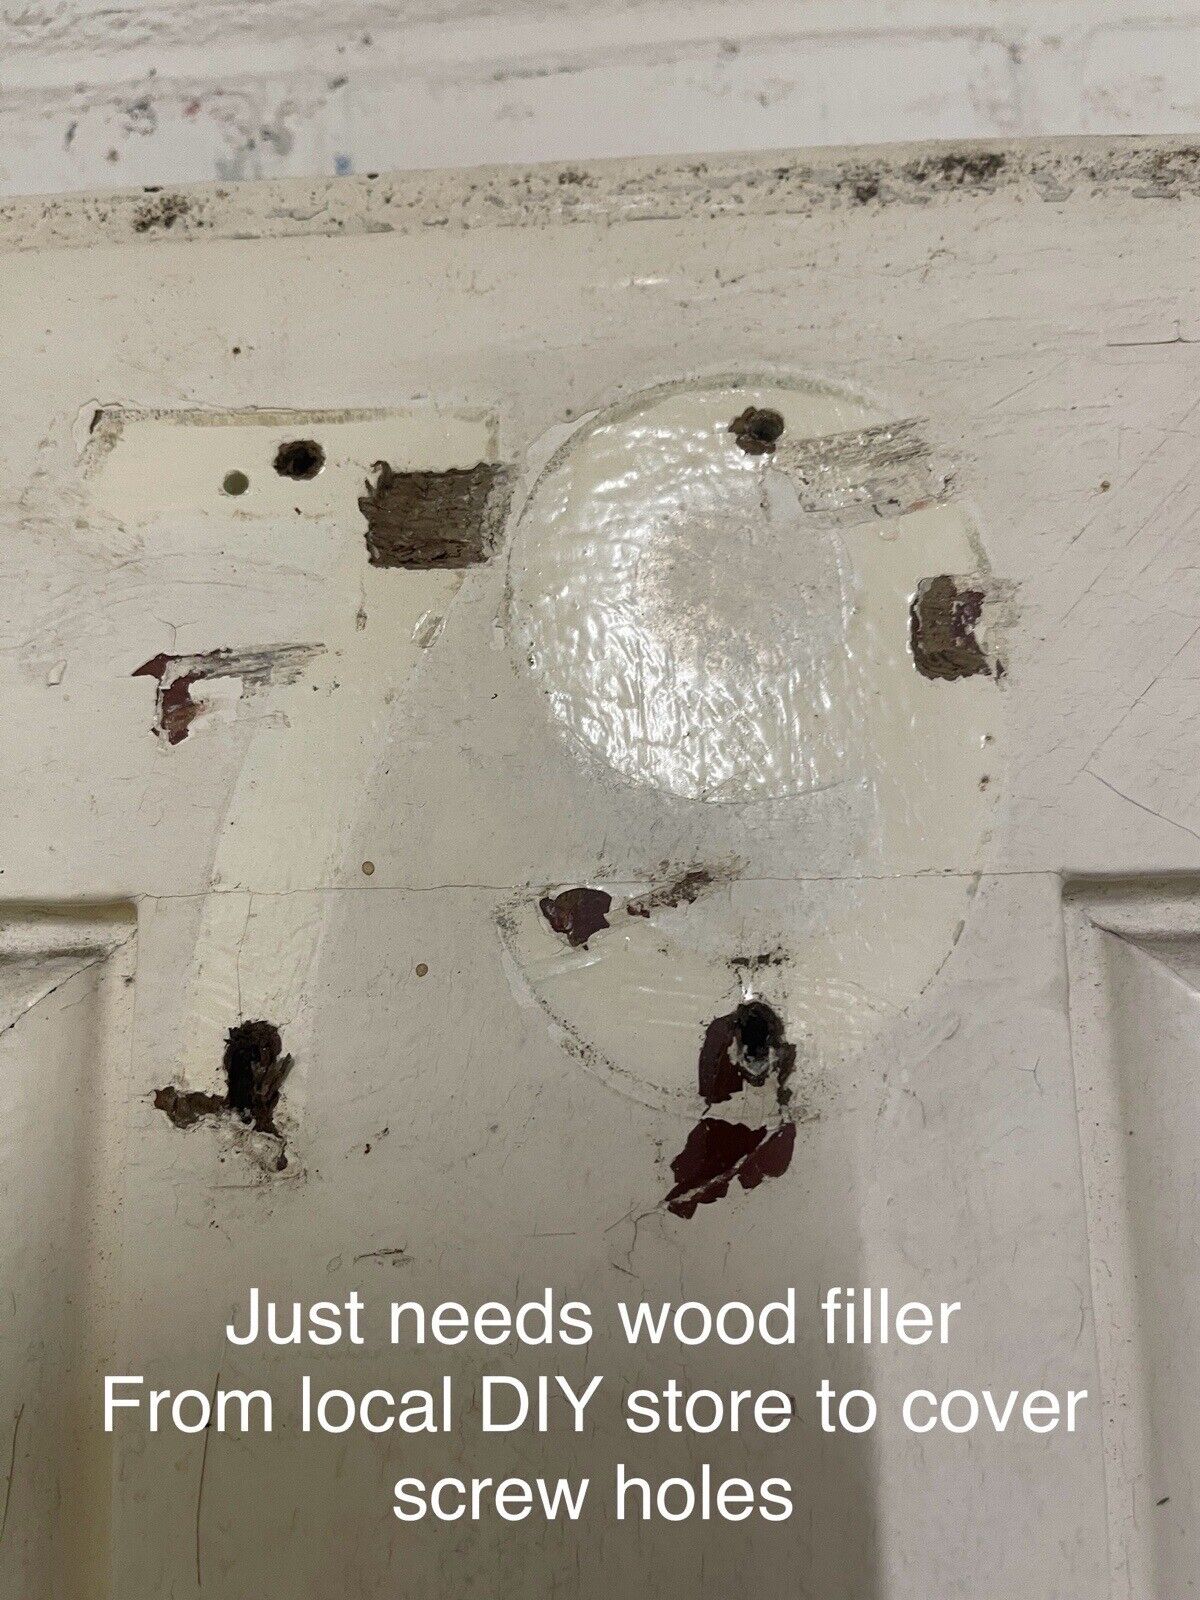 Reclaimed Old Victorian Edwardian Wooden Embossed Panels Front Door 2030 x 810mm